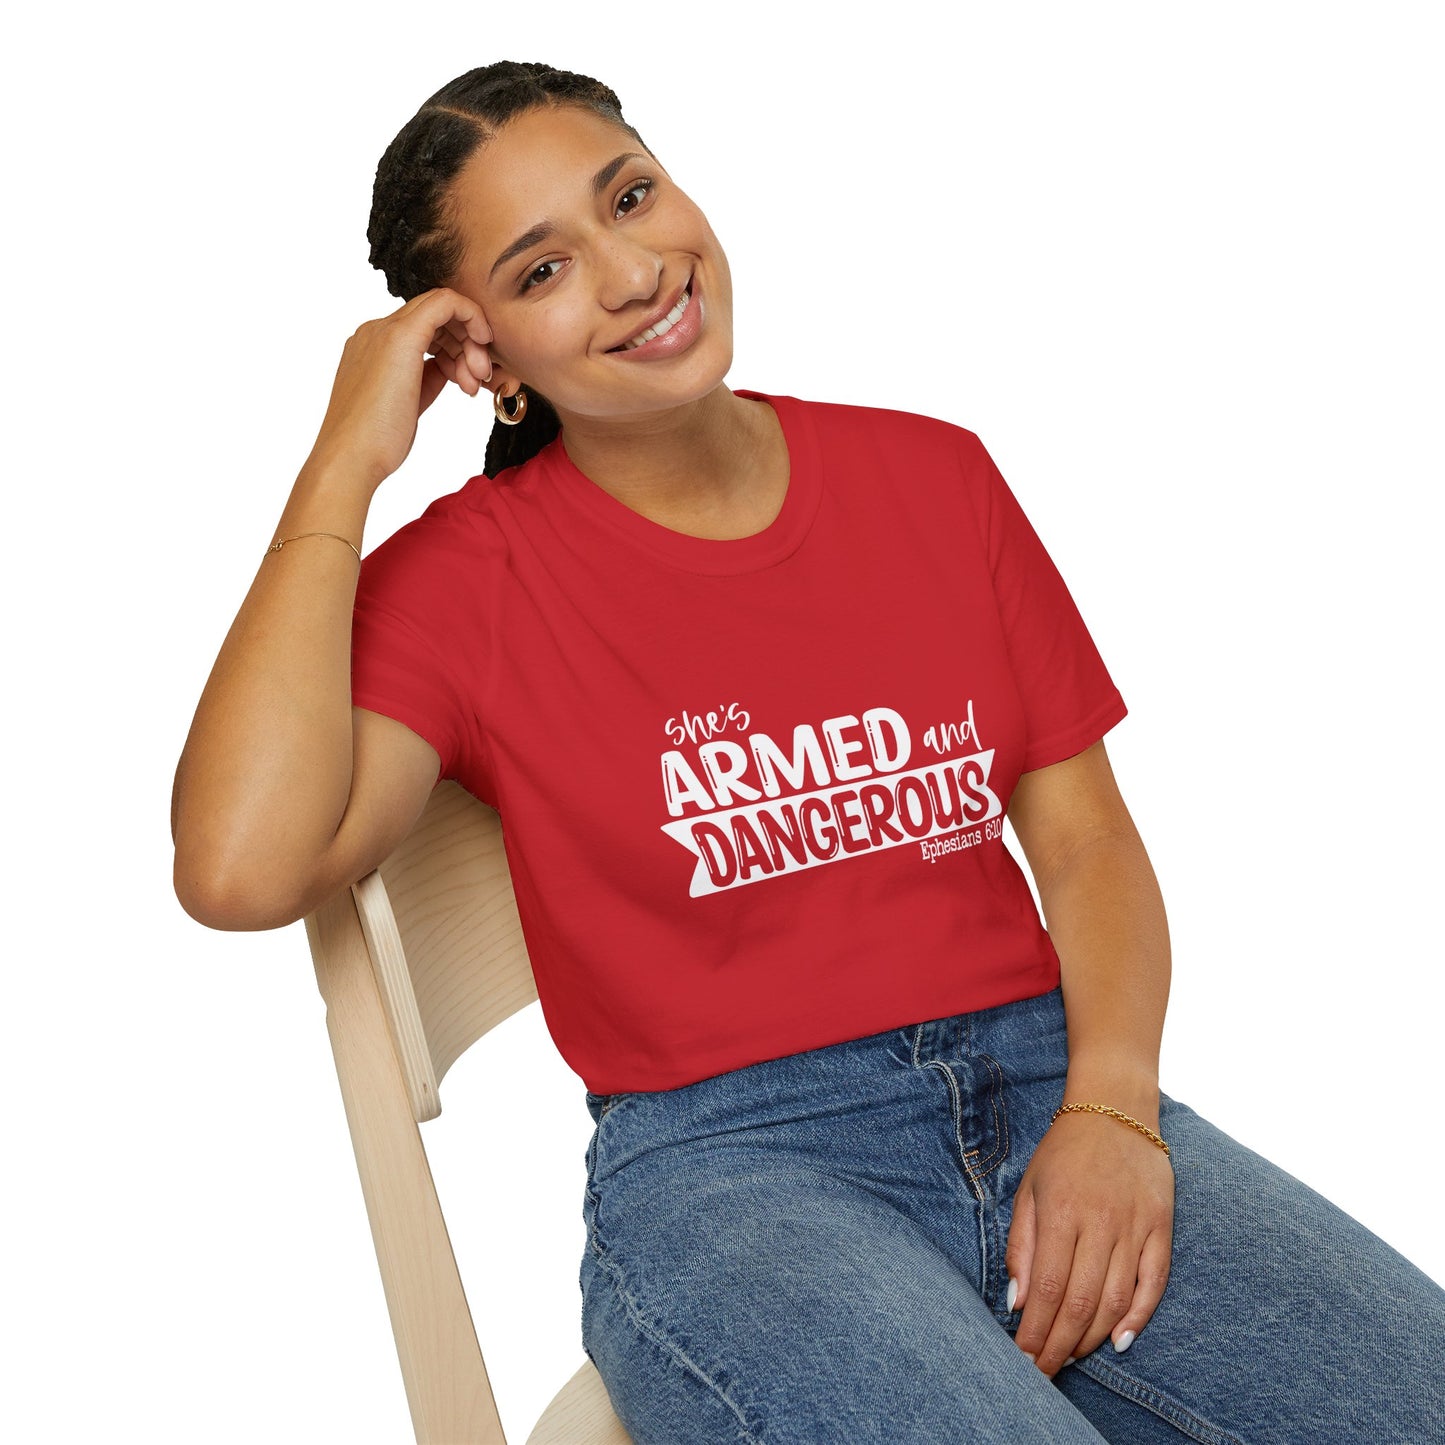 She's Armed And Dangerous Ephesians 6:10 Women's Christian T-shirt